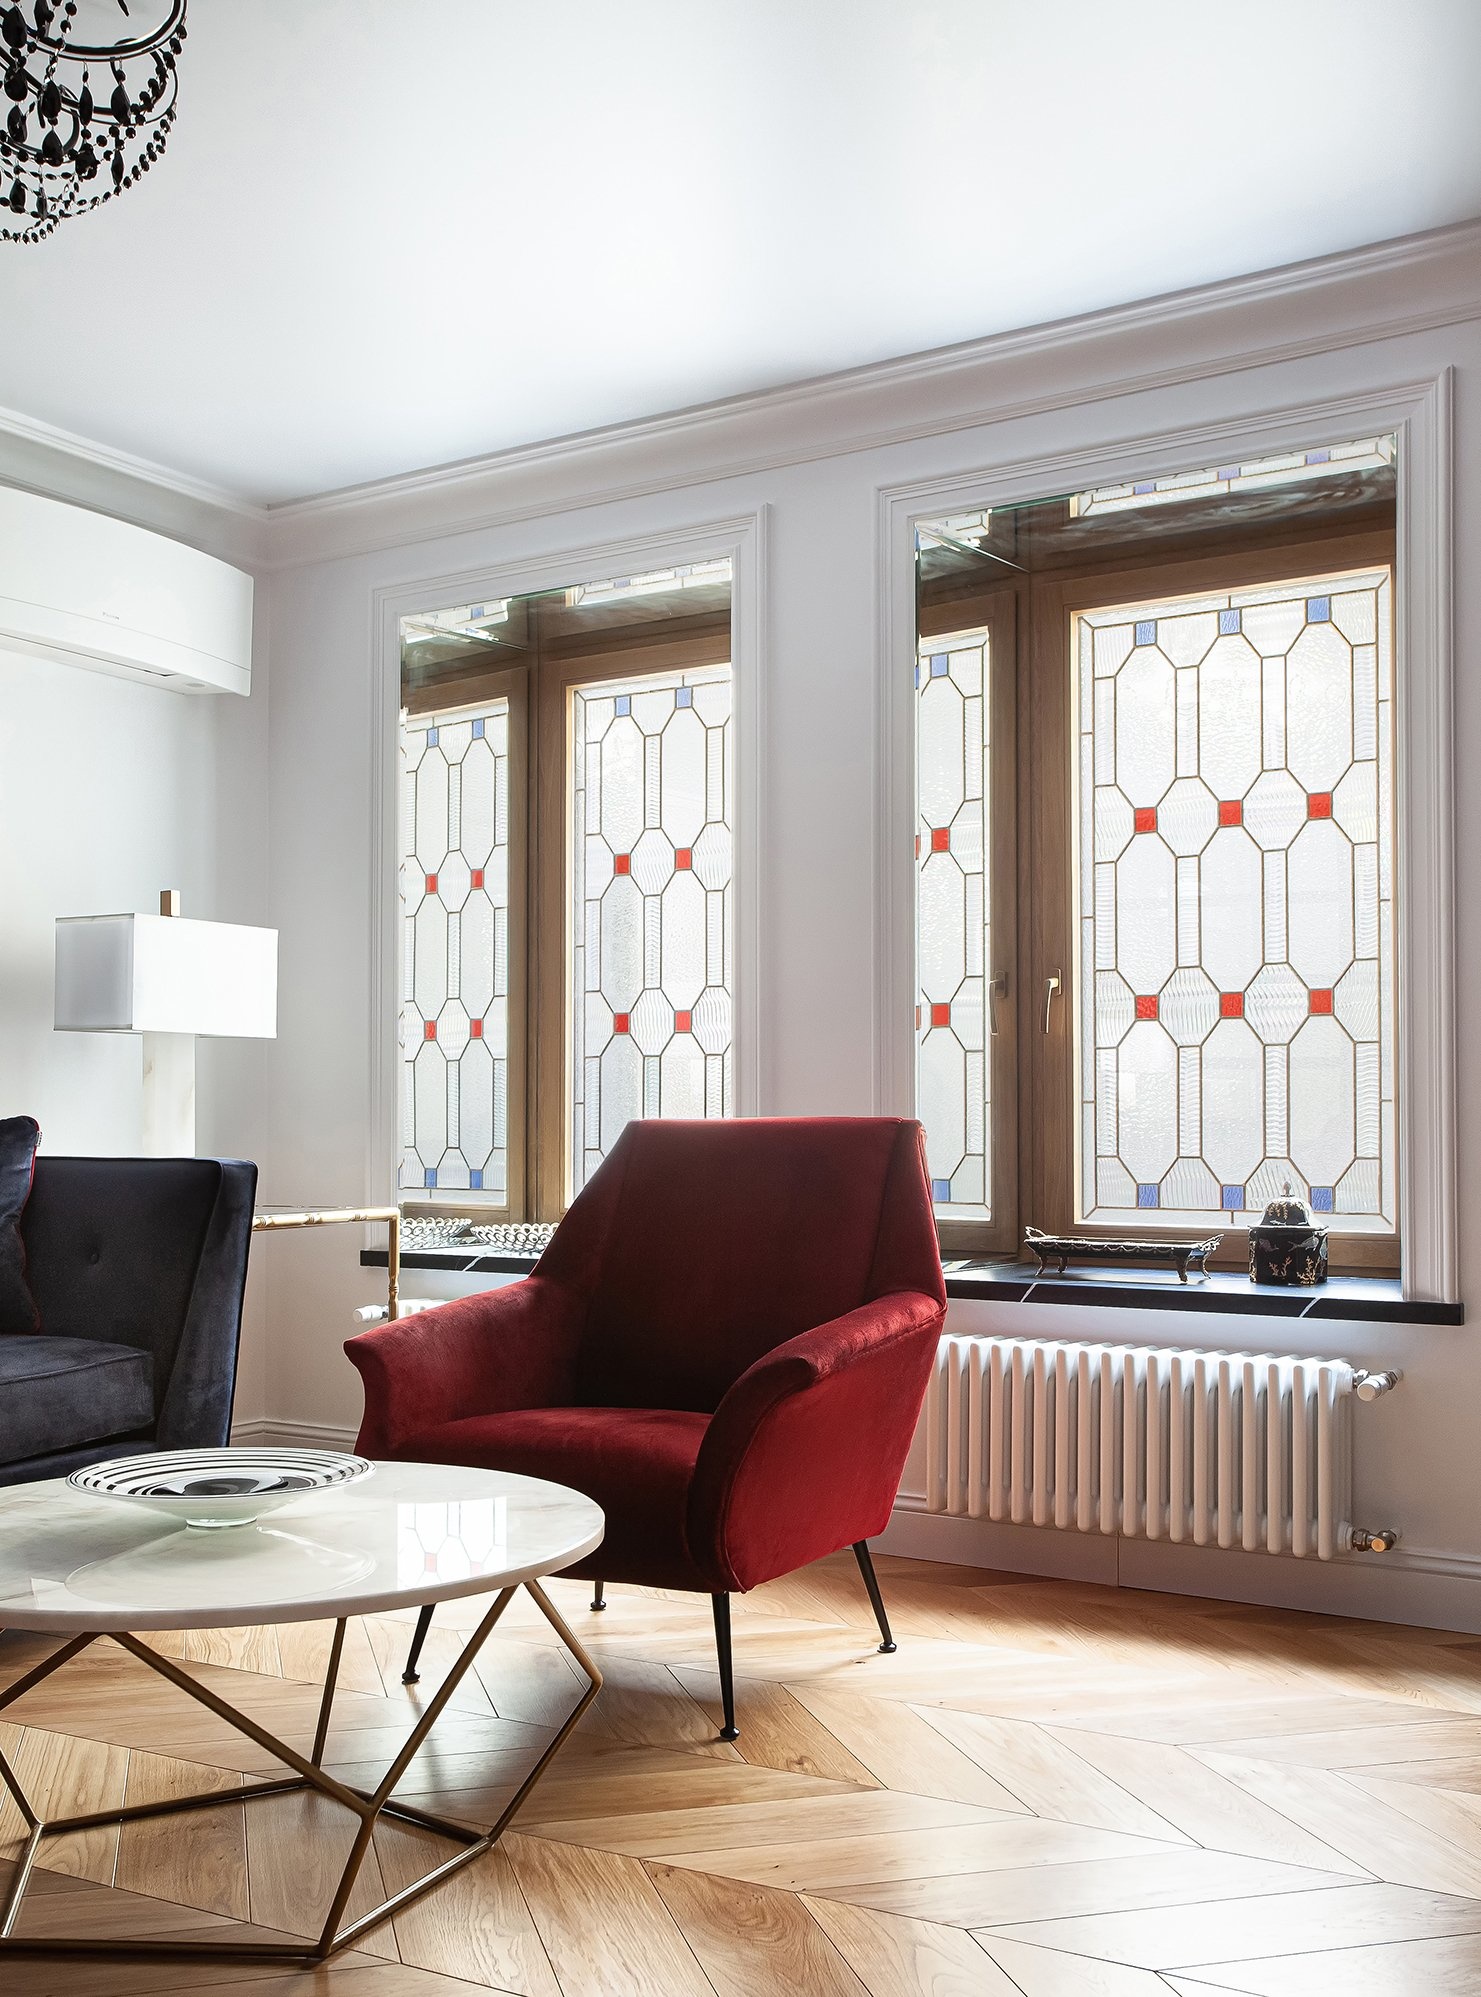 Cửa sổ kính màu khúc xạ ánh sáng tự nhiên một cách đẹp mắt, cho phòng khách này vẻ đẹp tươi sáng không thua kém gì một ô cửa trong suốt. Thiết kế đa dạng, phù hợp với nhiều phong cách nội thất từ truyền thống đến hiện đại.